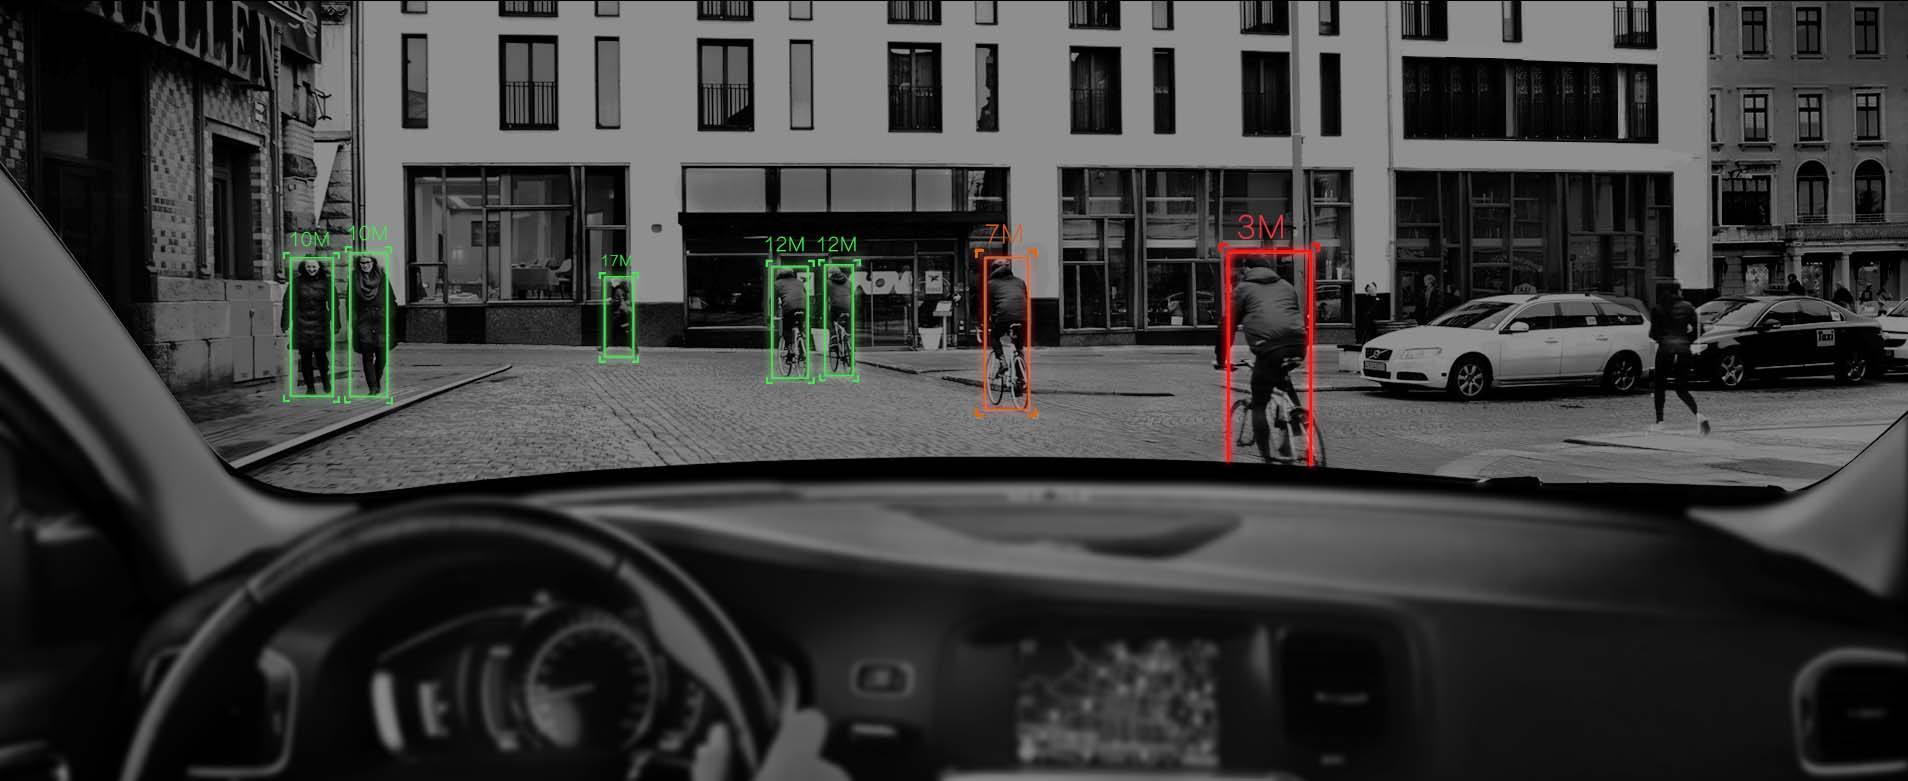 研究方向 智能驾驶智能驾驶是通过人工智能辅助或代替人进行汽车驾驶